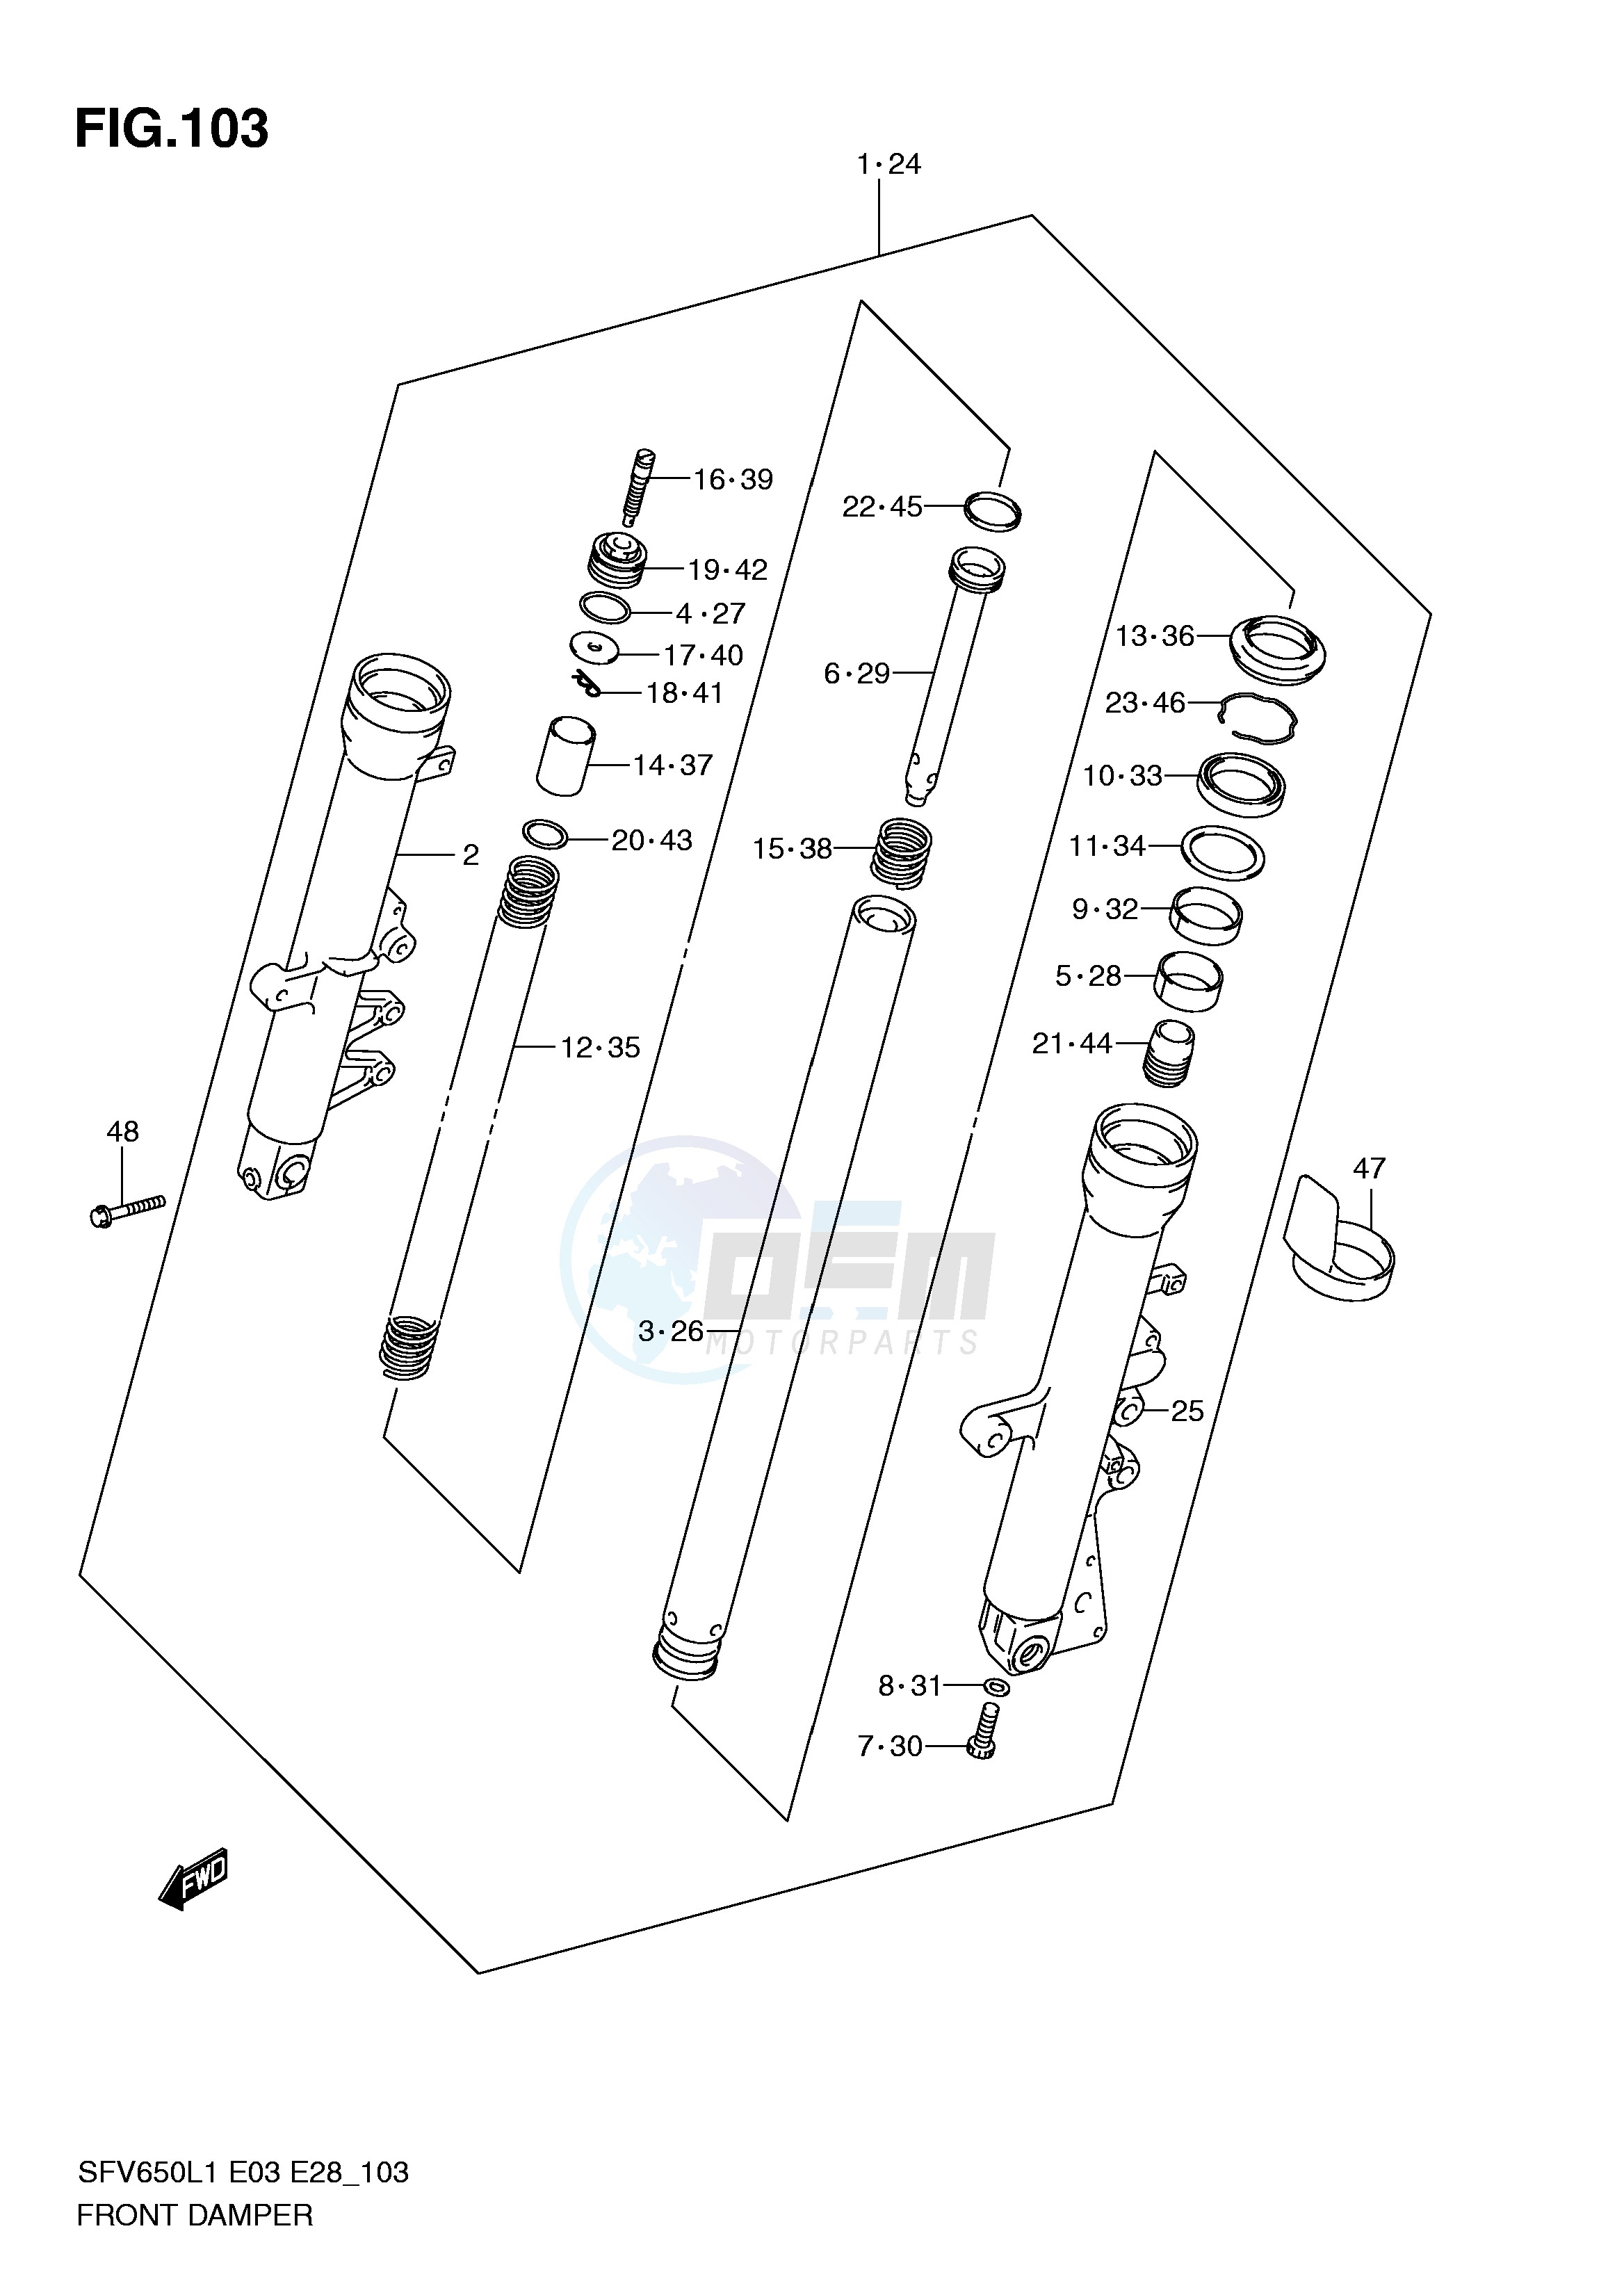 FRONT DAMPER (SFV650L1 E28) blueprint